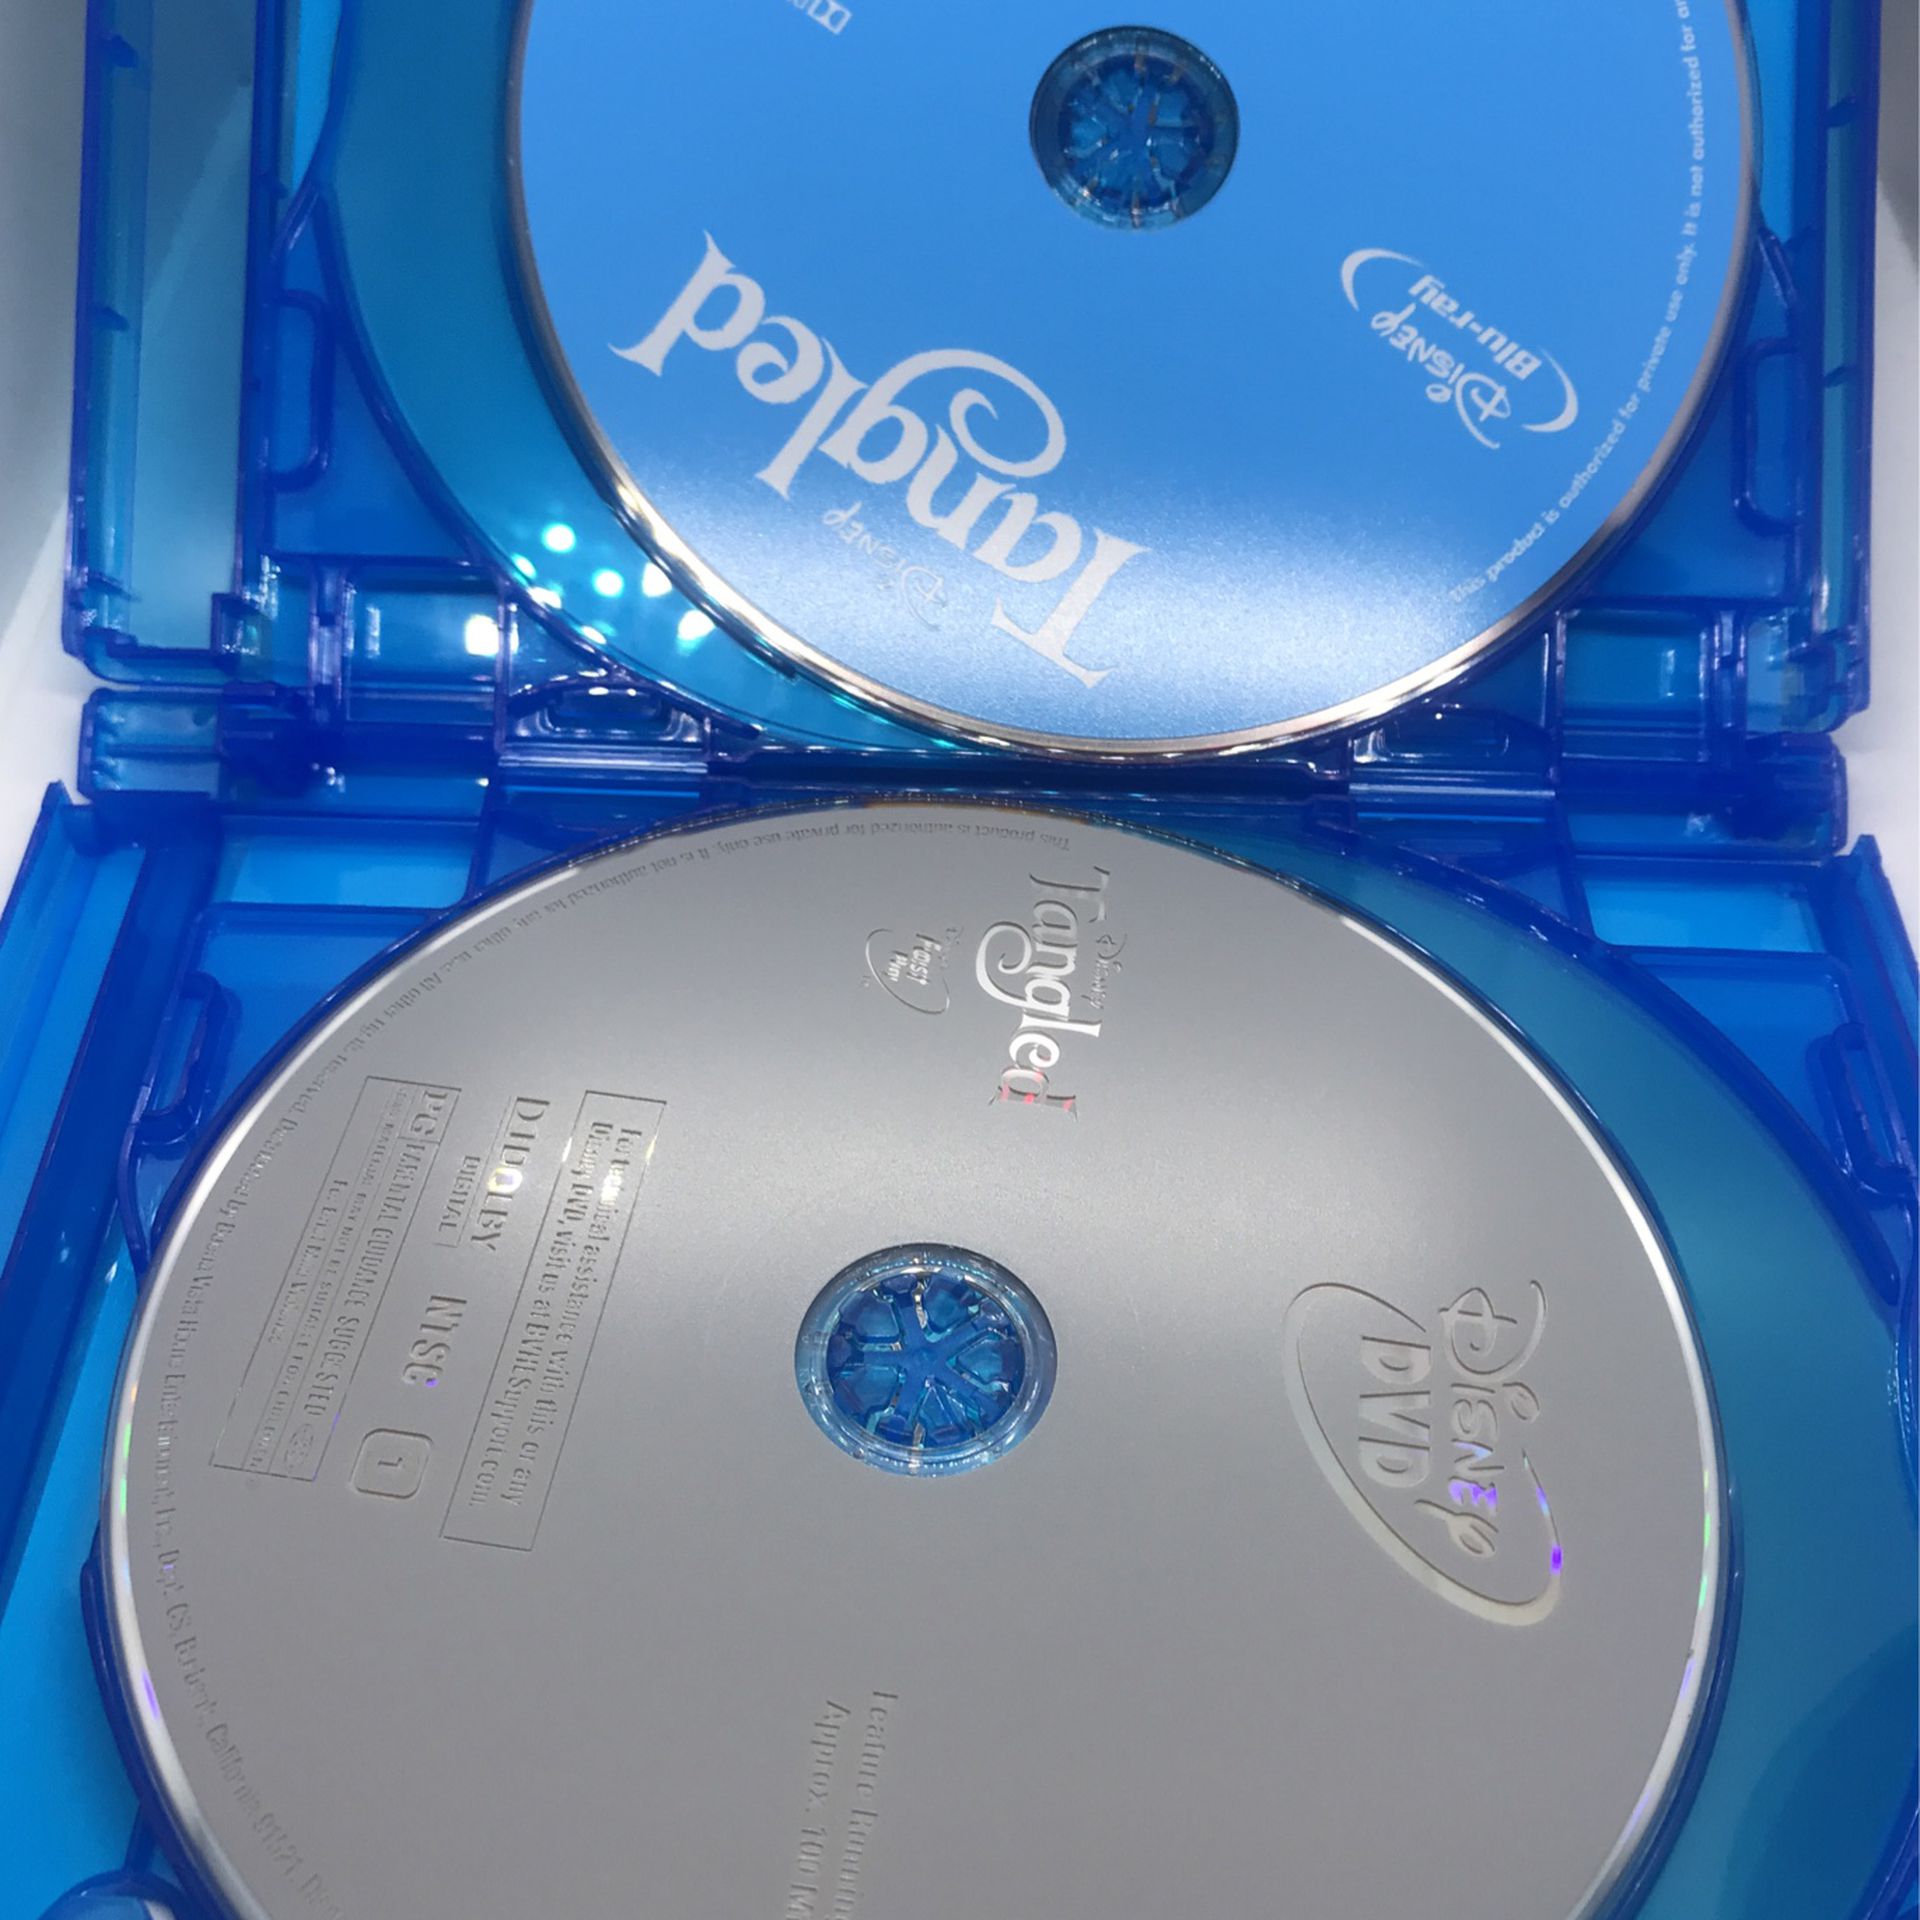 Disney Princess 3 Movie Collection Blu-ray DVD